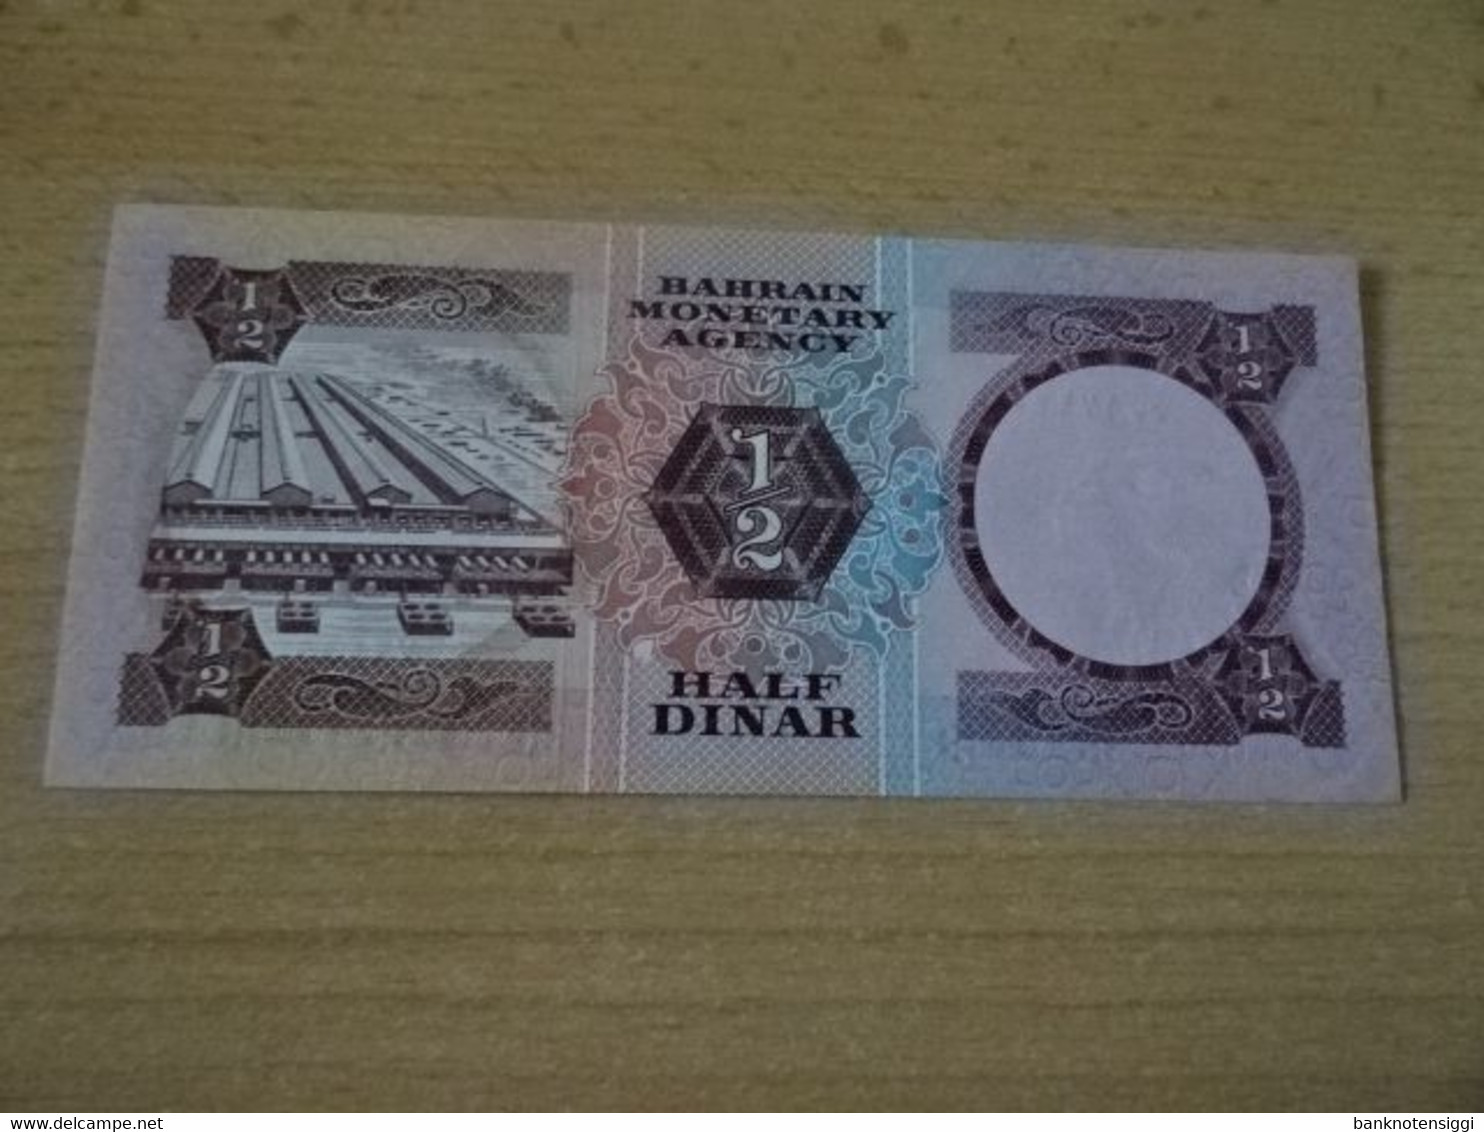 Banknote Bahrain 1/2 Dinar 1973 Unc - Bahrain